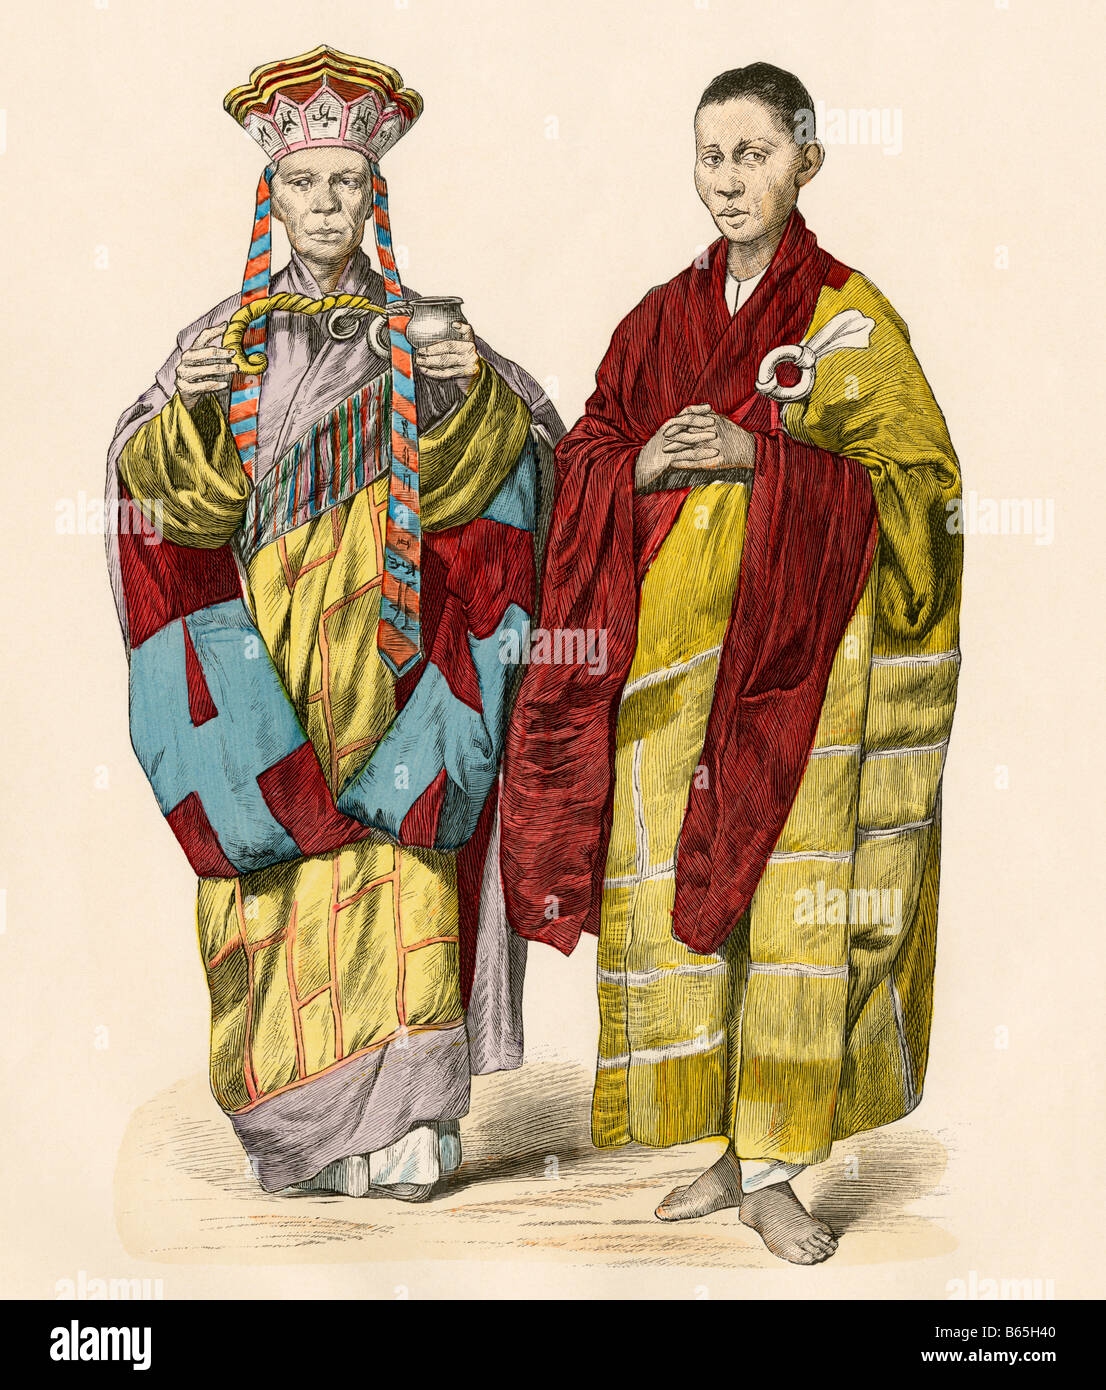 Buddhistischen Priester von Annam, Vietnam, wenn es als Französisch Indochina 1800s bekannt war. Hand-farbig drucken Stockfoto